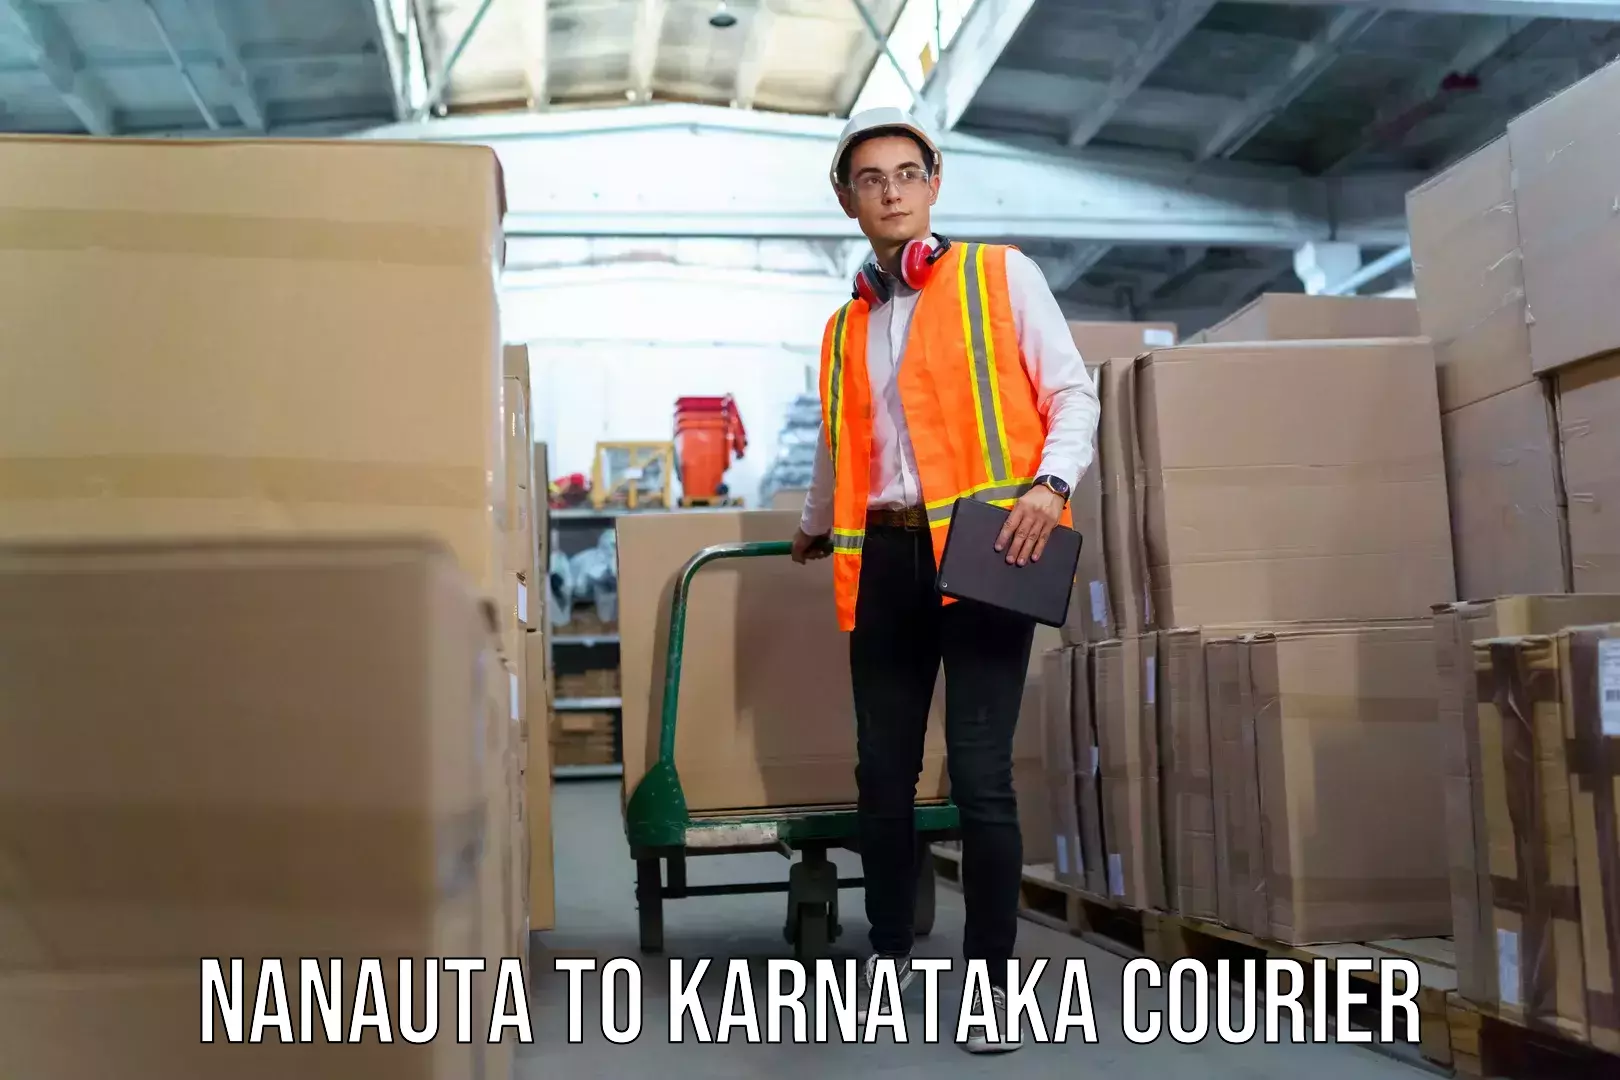 Luggage shipping discounts Nanauta to Karnataka